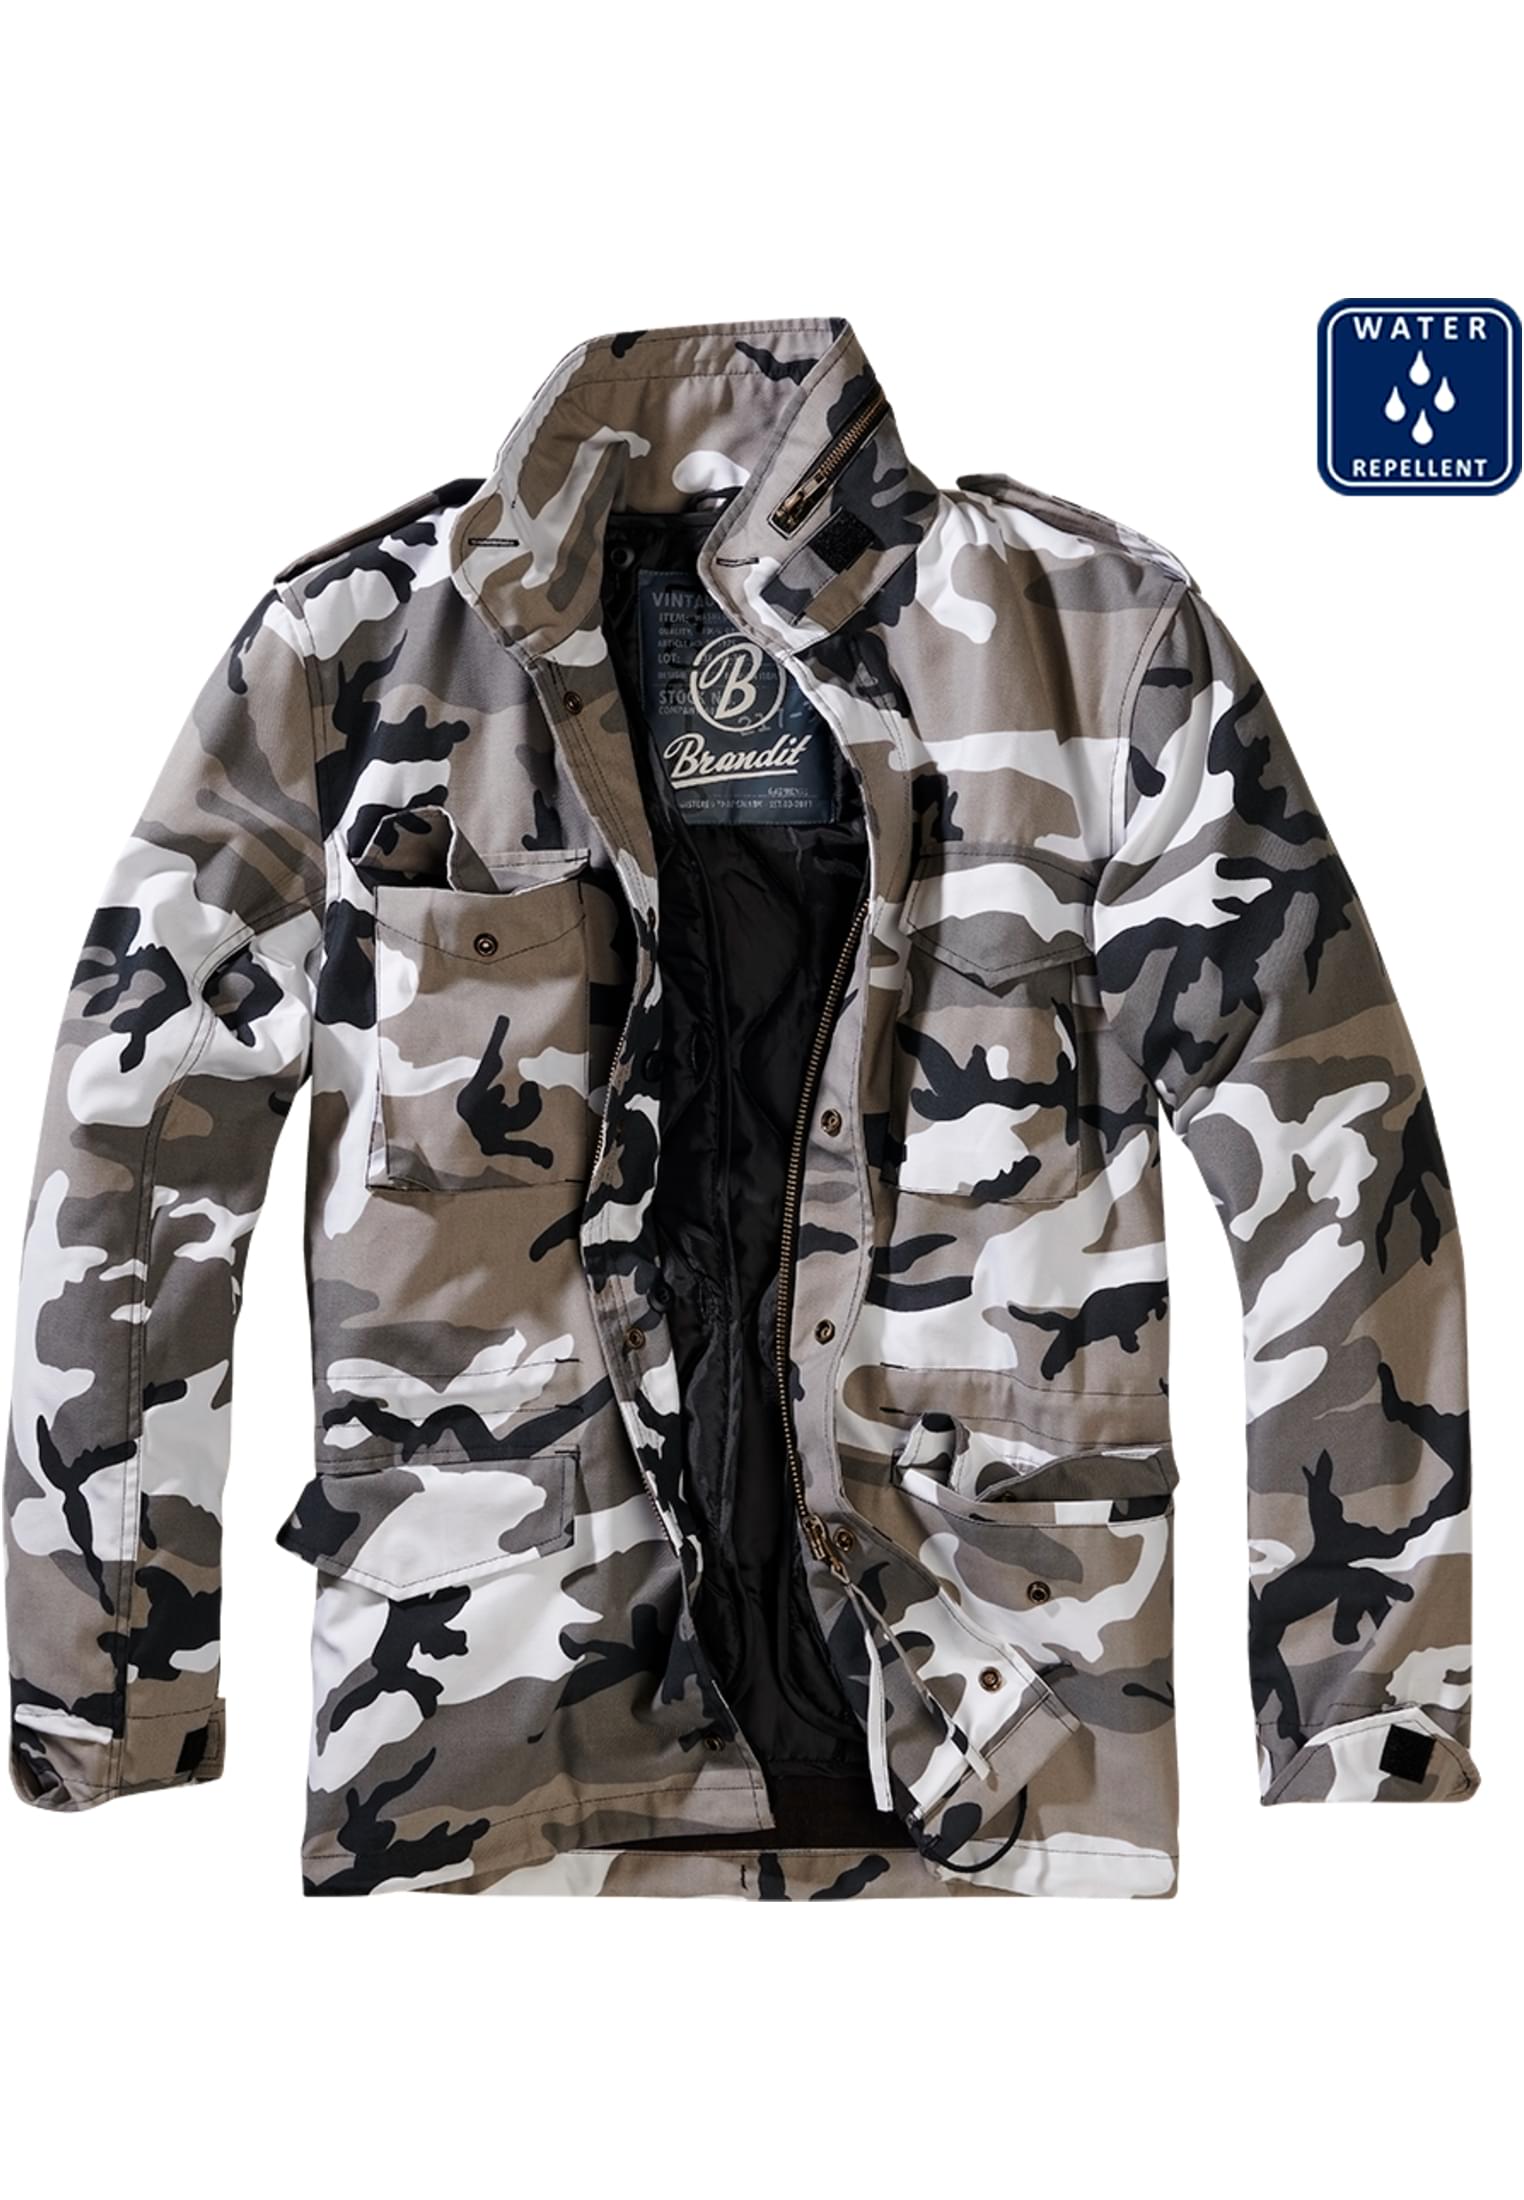 Jacken M-65 Field Jacket in Farbe snowcamo